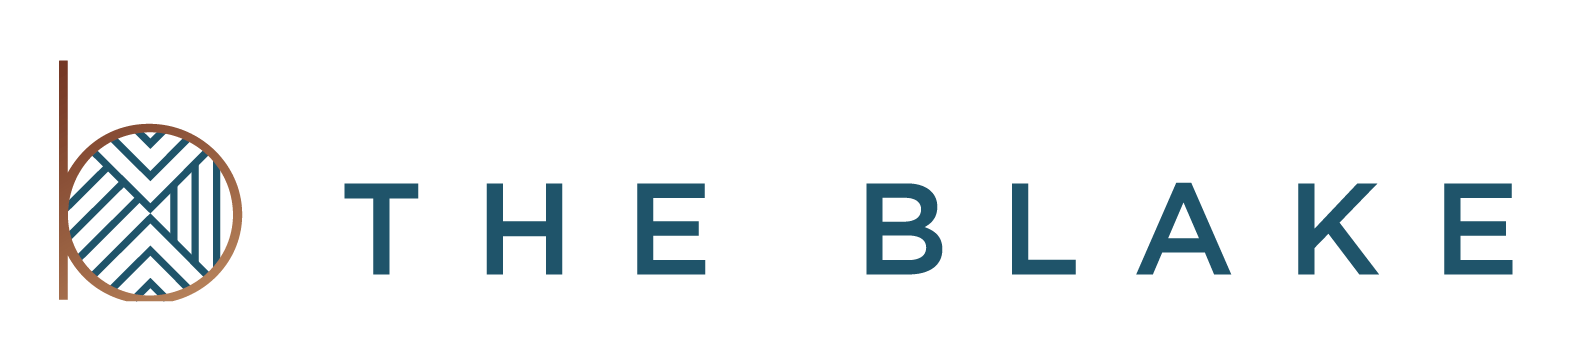 Blake Logo - The Blake – Be Blake.